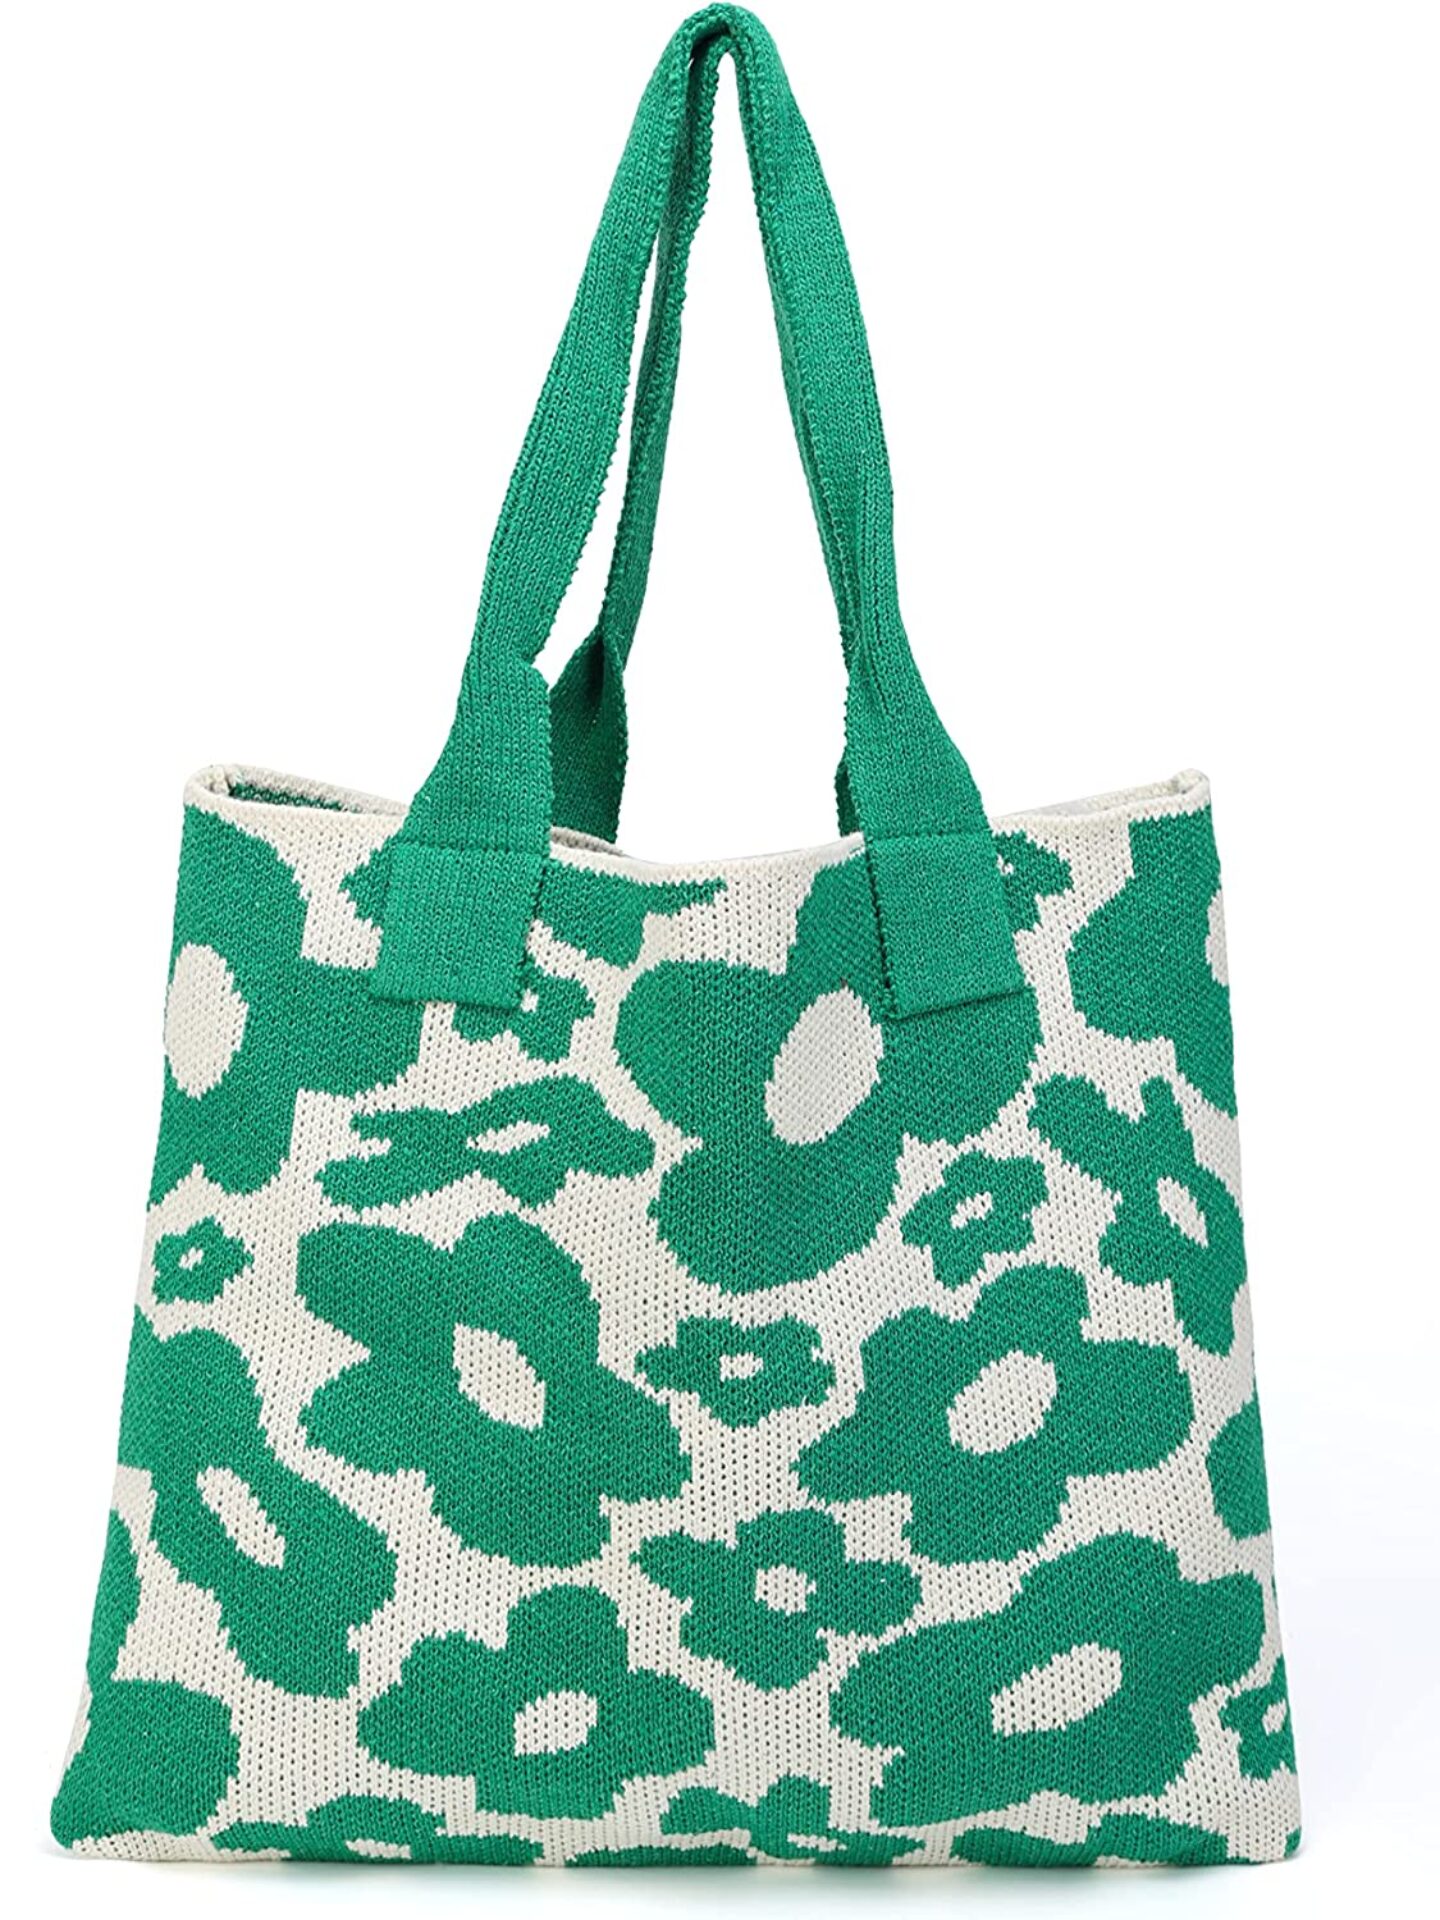 Shell Handbags - Sweetie Pie (more colors) – Necessities Online